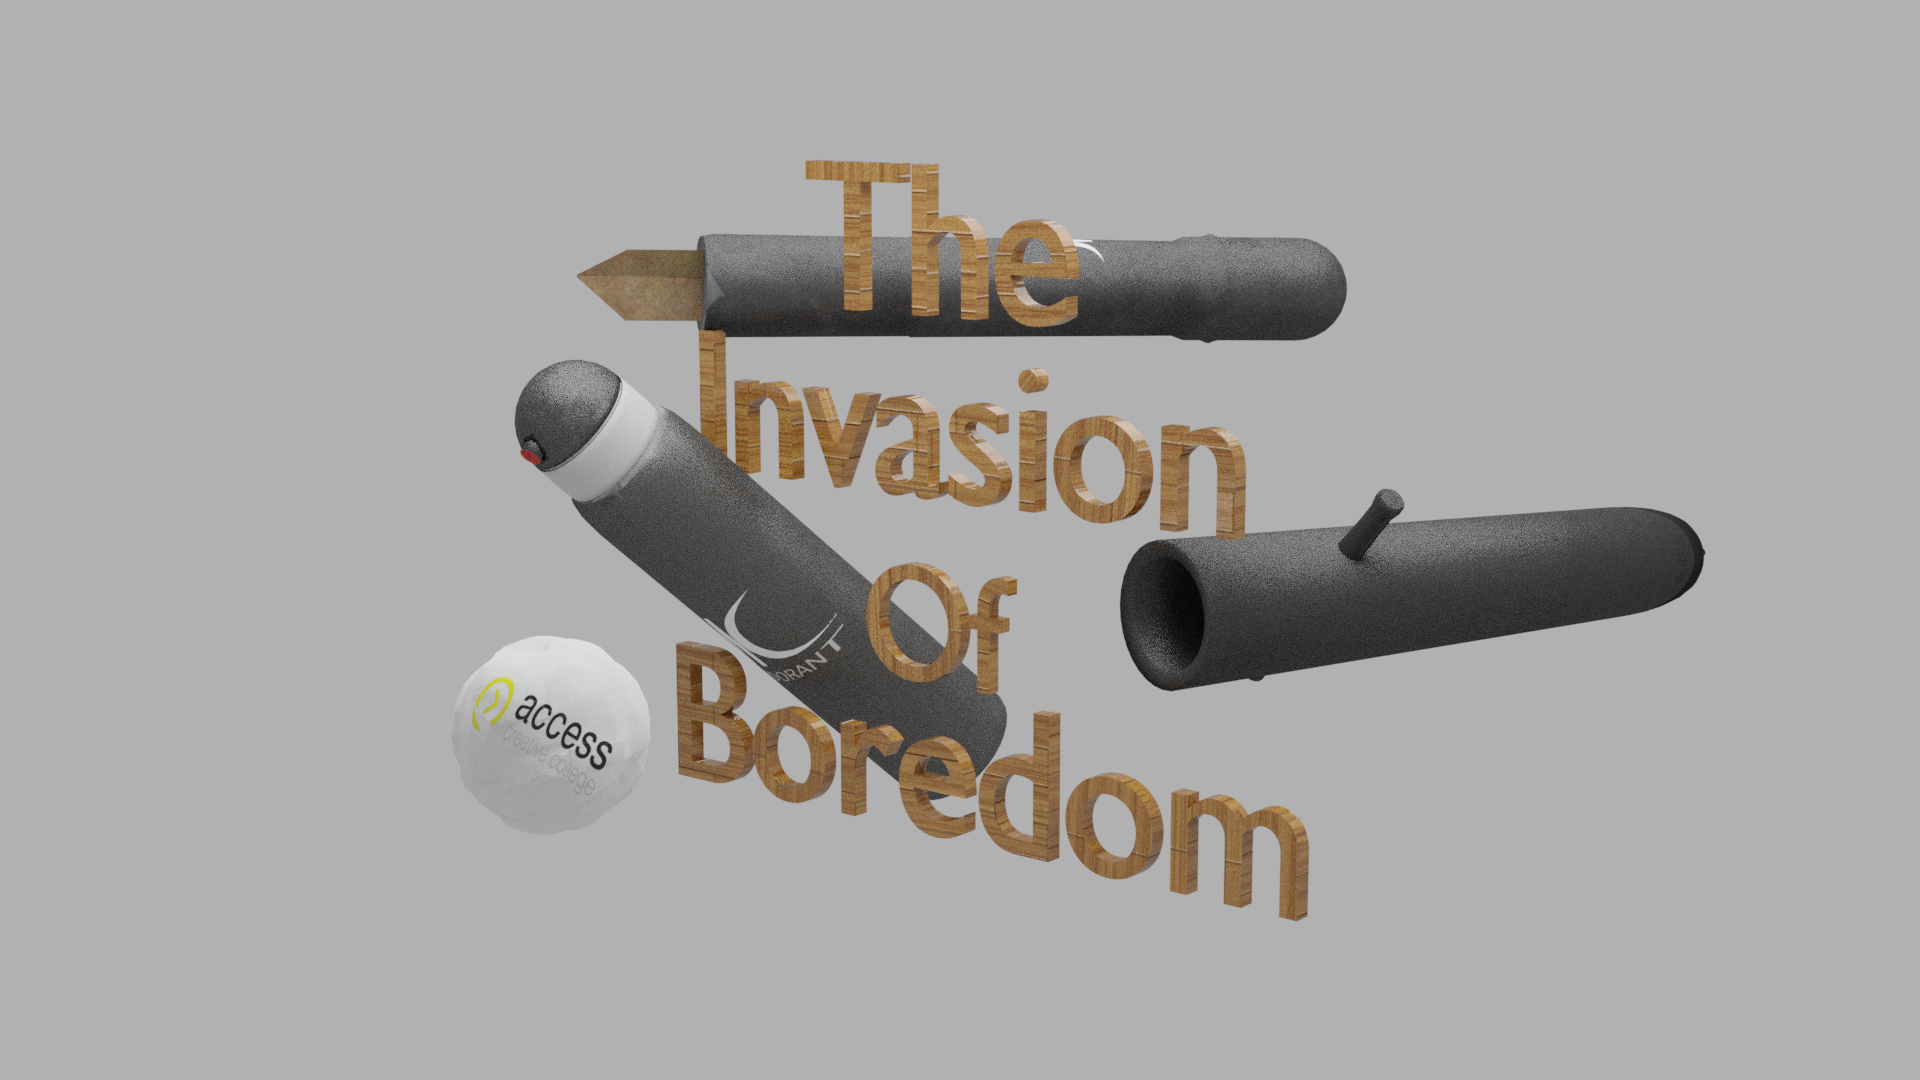 The Invasion of Boredom